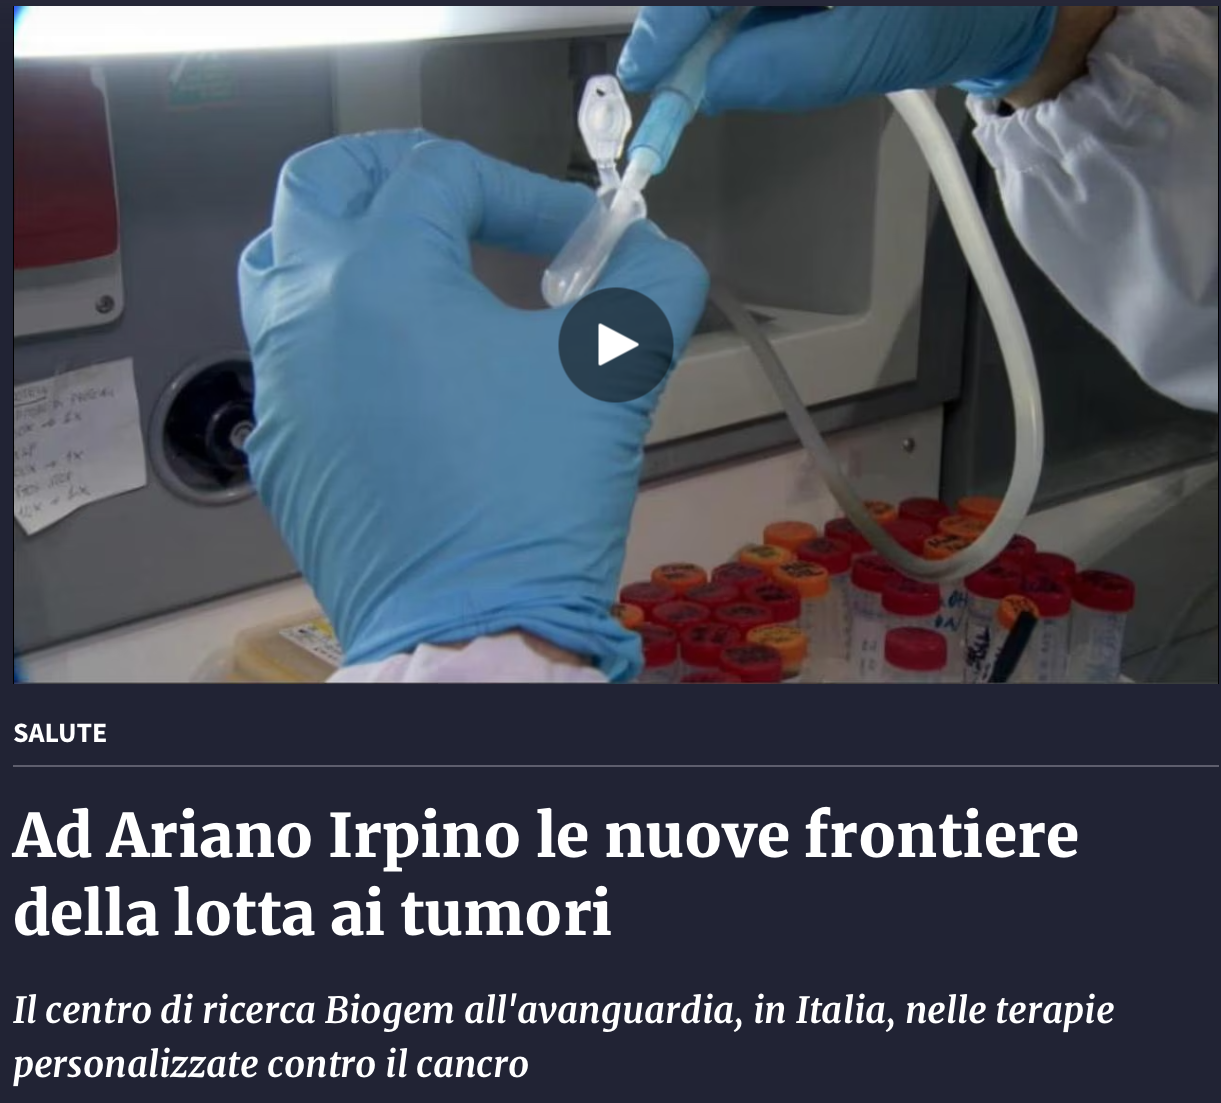 Ad Ariano Irpino le nuove frontiere della lotta ai tumori